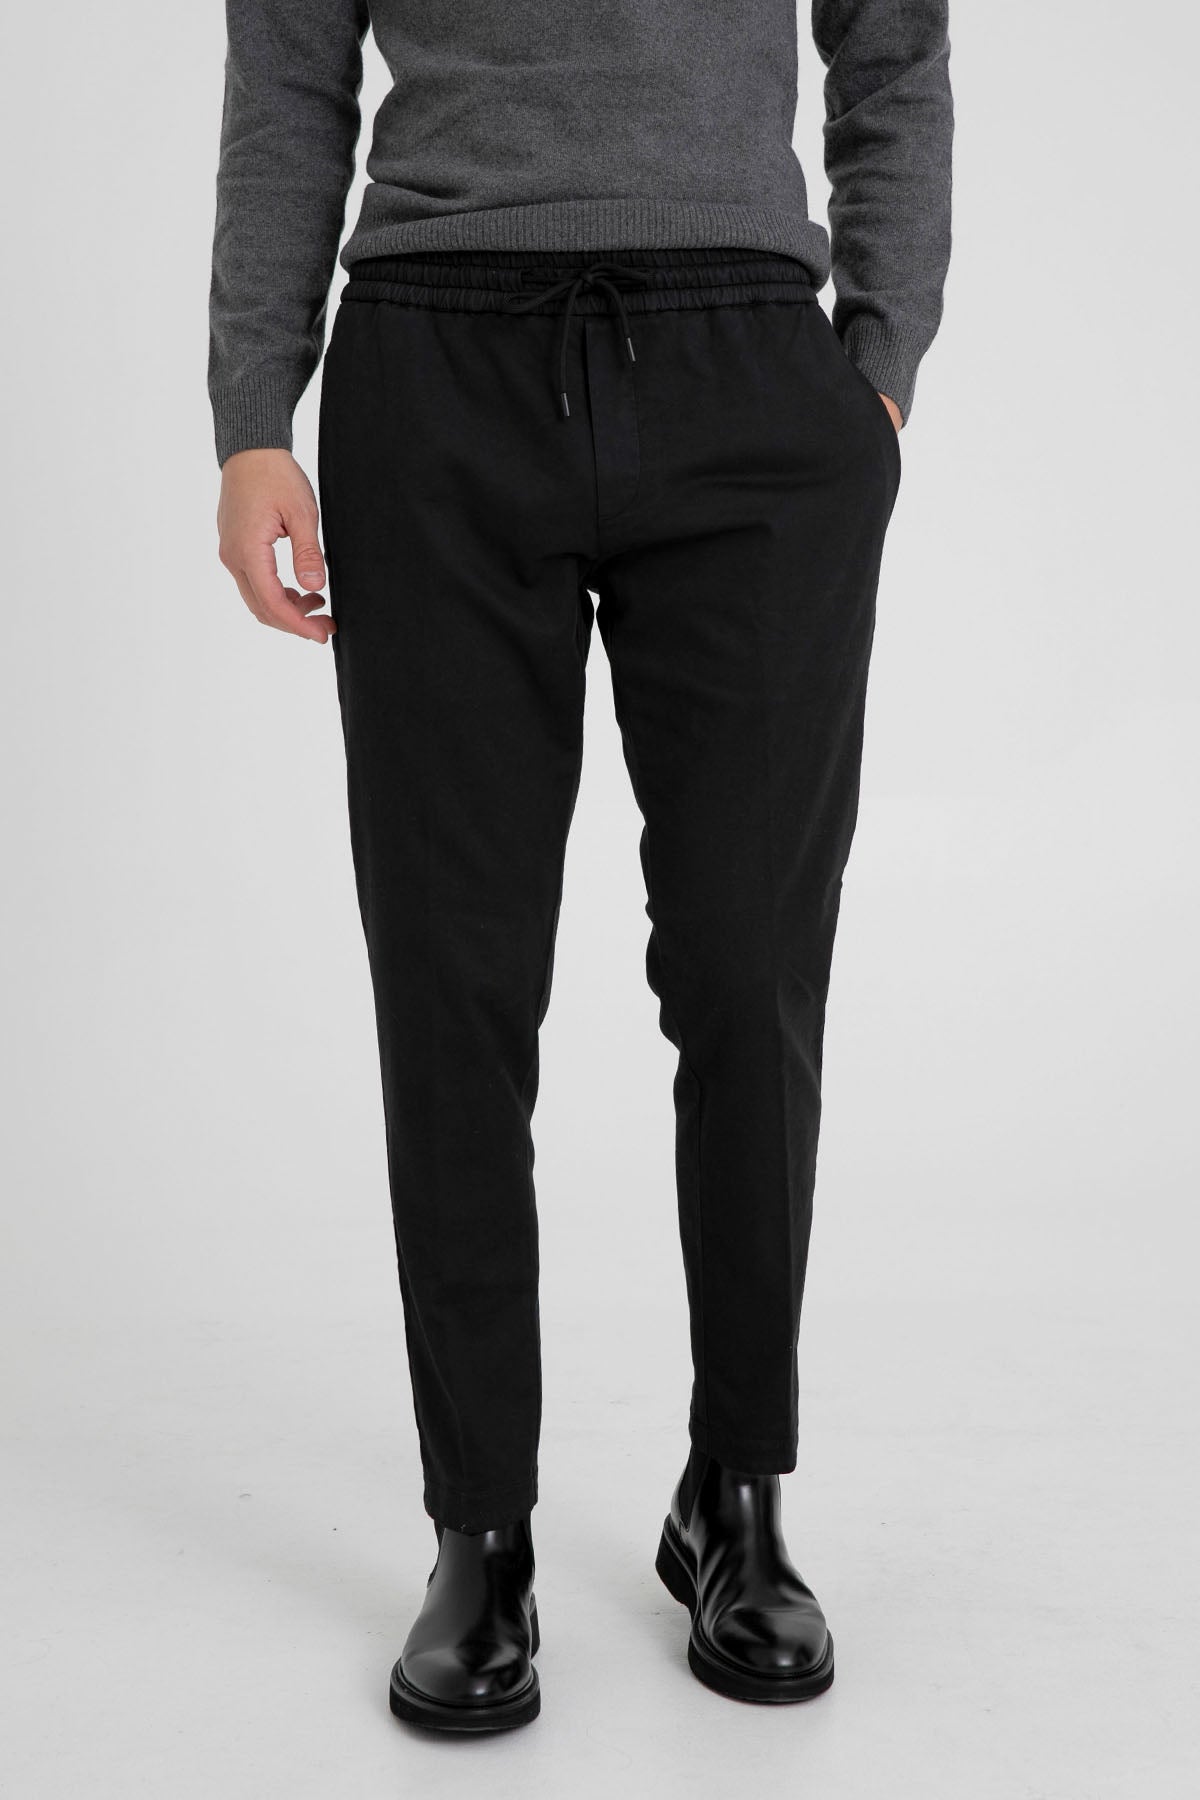 Dondup Beli Lastikli Jogger Slim Fit Pantolon-Libas Trendy Fashion Store